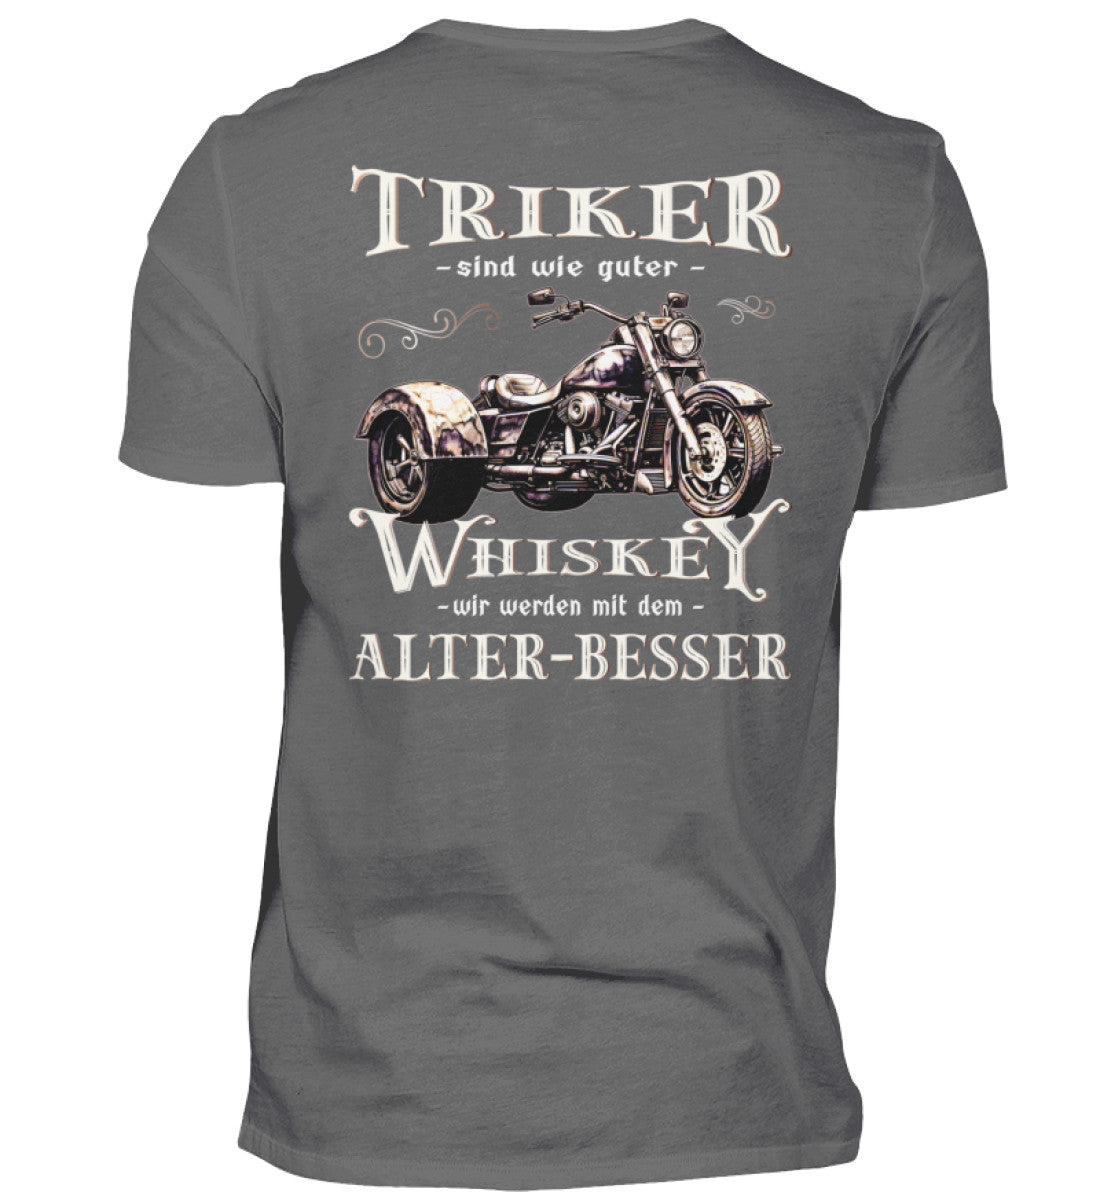 Ein T-Shirt für Trike Fahrer von Wingbikers mit dem Aufdruck, Triker sind wie guter Whiskey - Wir werden mit dem Alter besser, als Back Print, in grau.